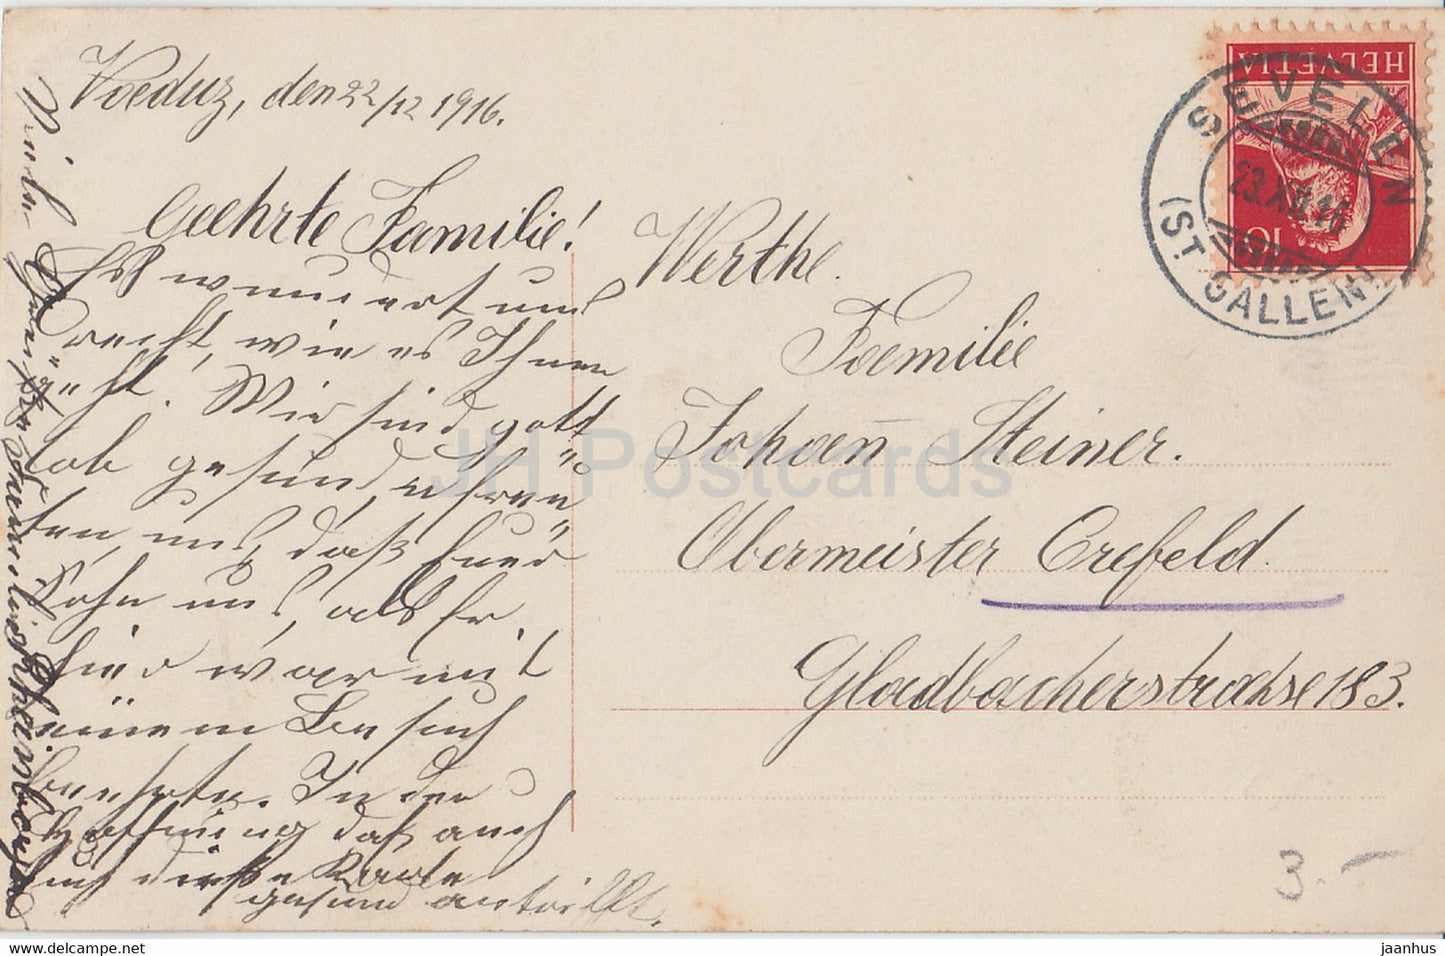 Neujahrsgrußkarte - Herzinnigen Gluckwinsche zum neuen Jahre - EAS 649/1 - alte Postkarte - 1916 - Deutschland - gebraucht